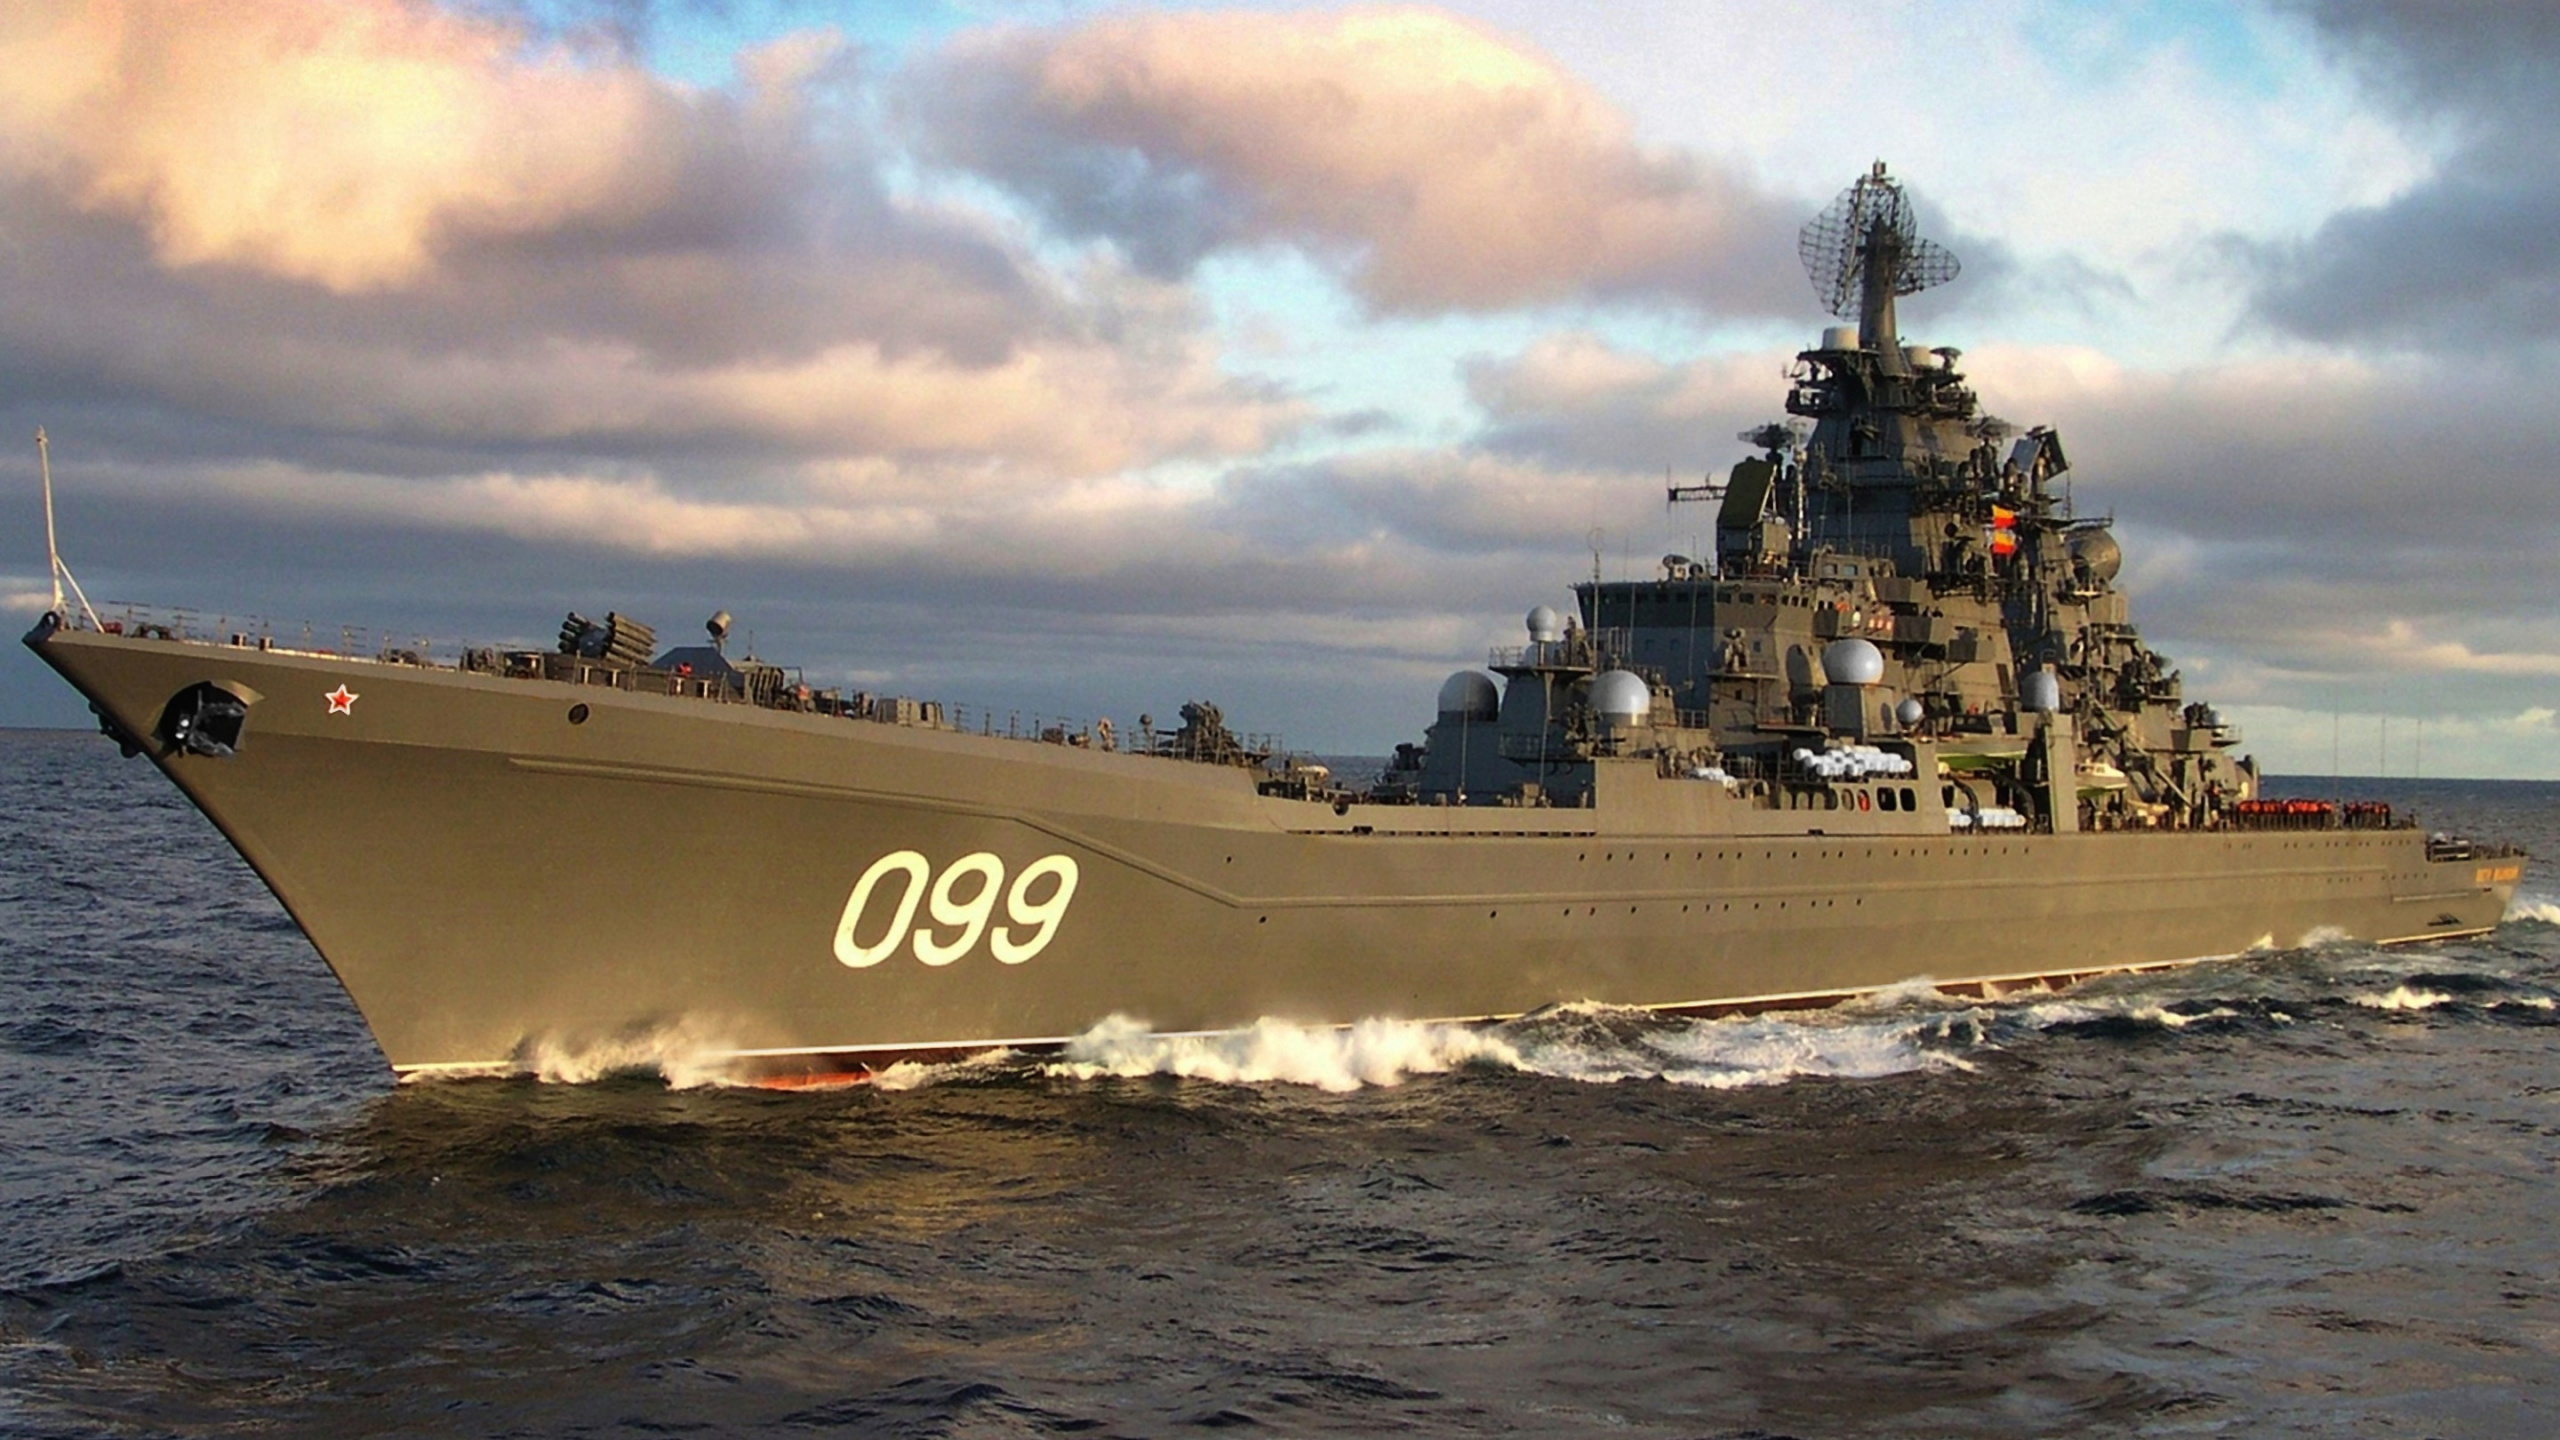 俄罗斯战列巡洋舰 Pyotr Velikiy, 巡洋舰, 军舰, 战舰, 海军的船 壁纸 2560x1440 允许